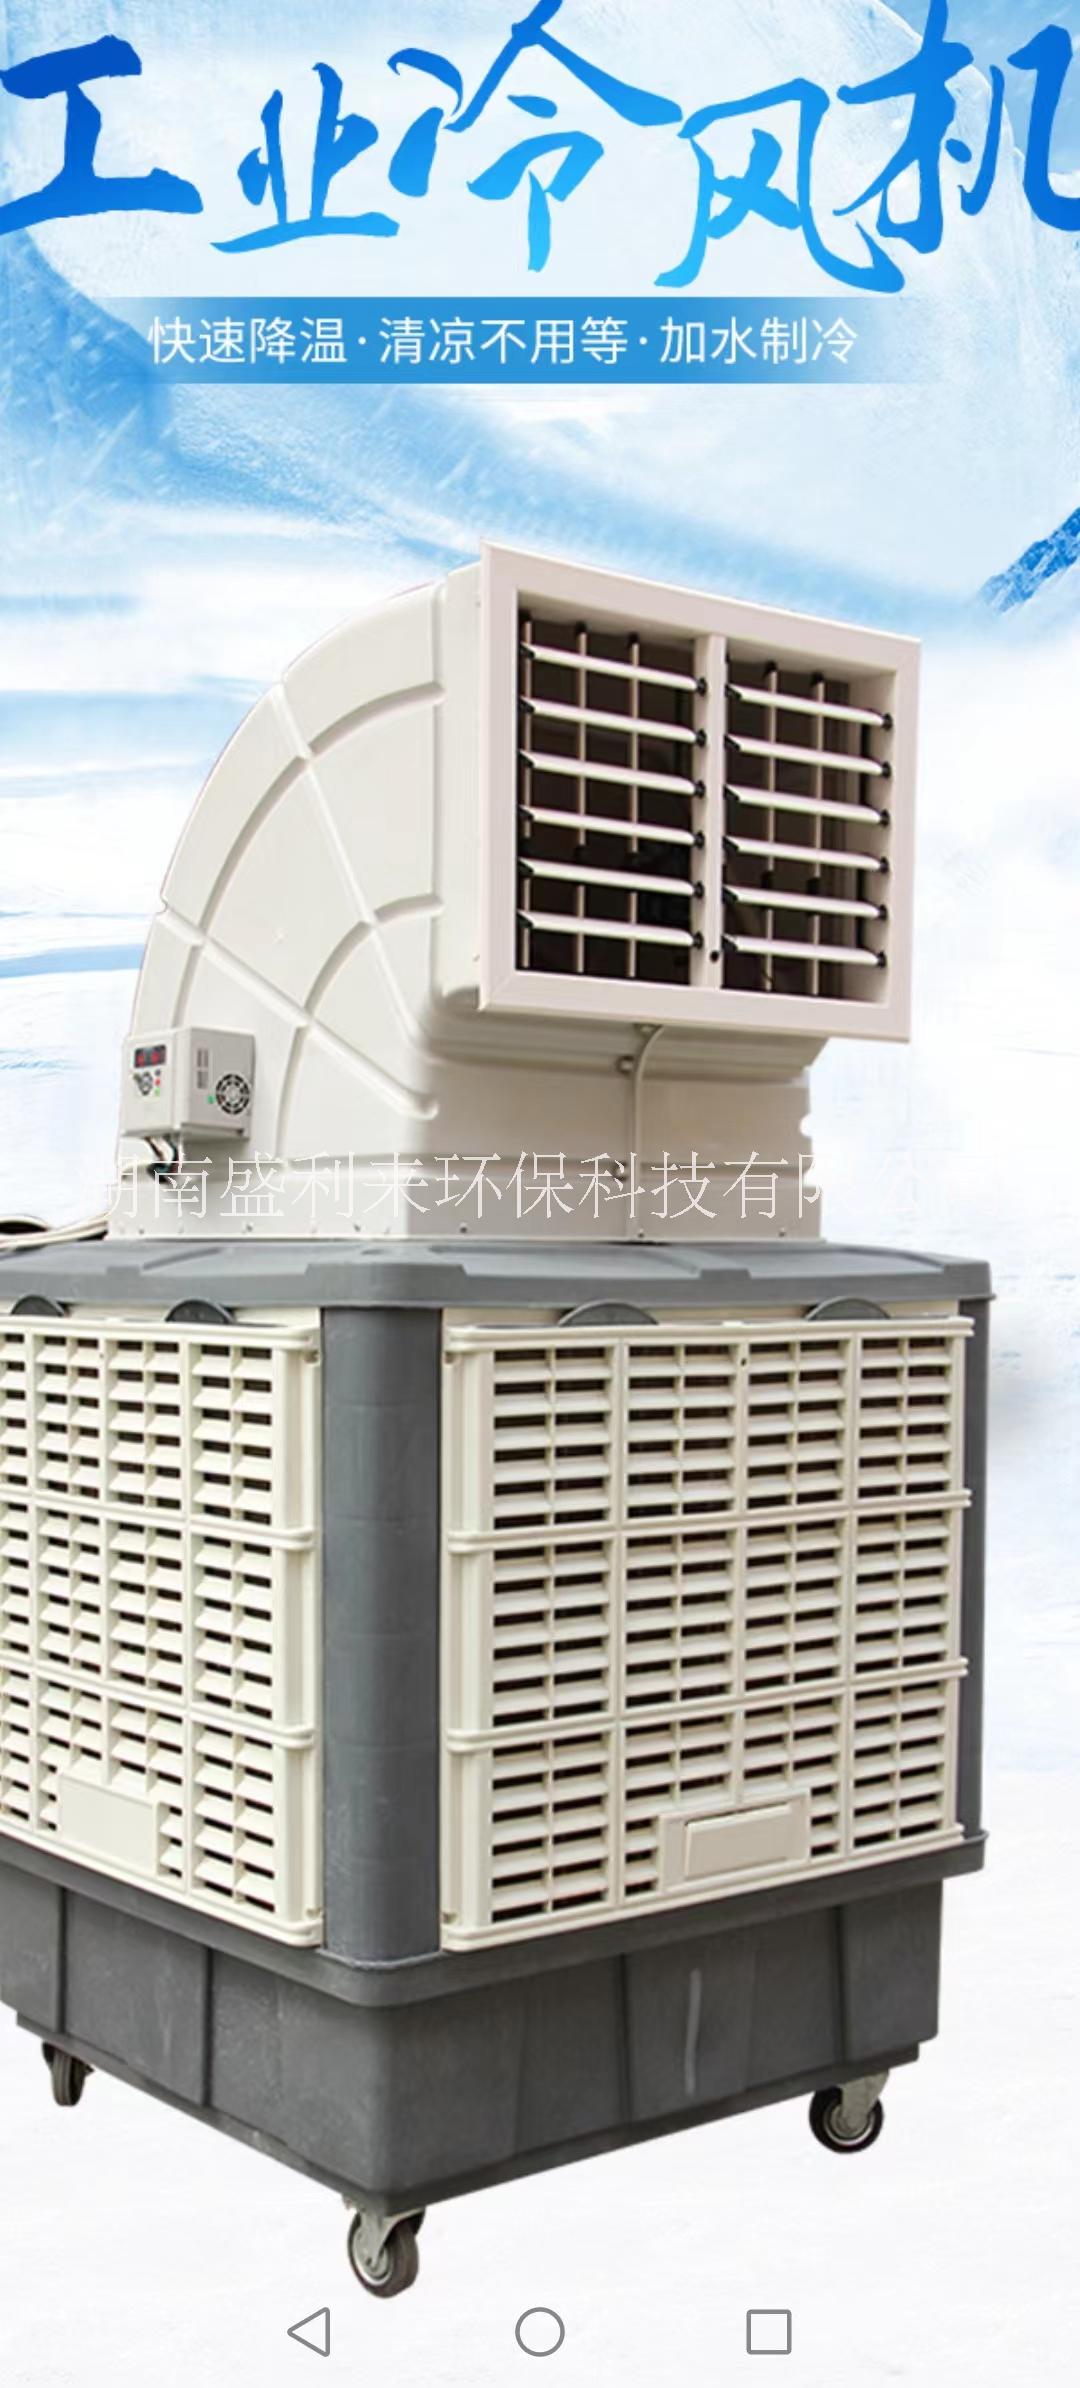 环保空调/蒸发式水冷空调 SLL-18环保空调/蒸发式水冷空调 SLL-20环保空调/蒸发式水冷空调